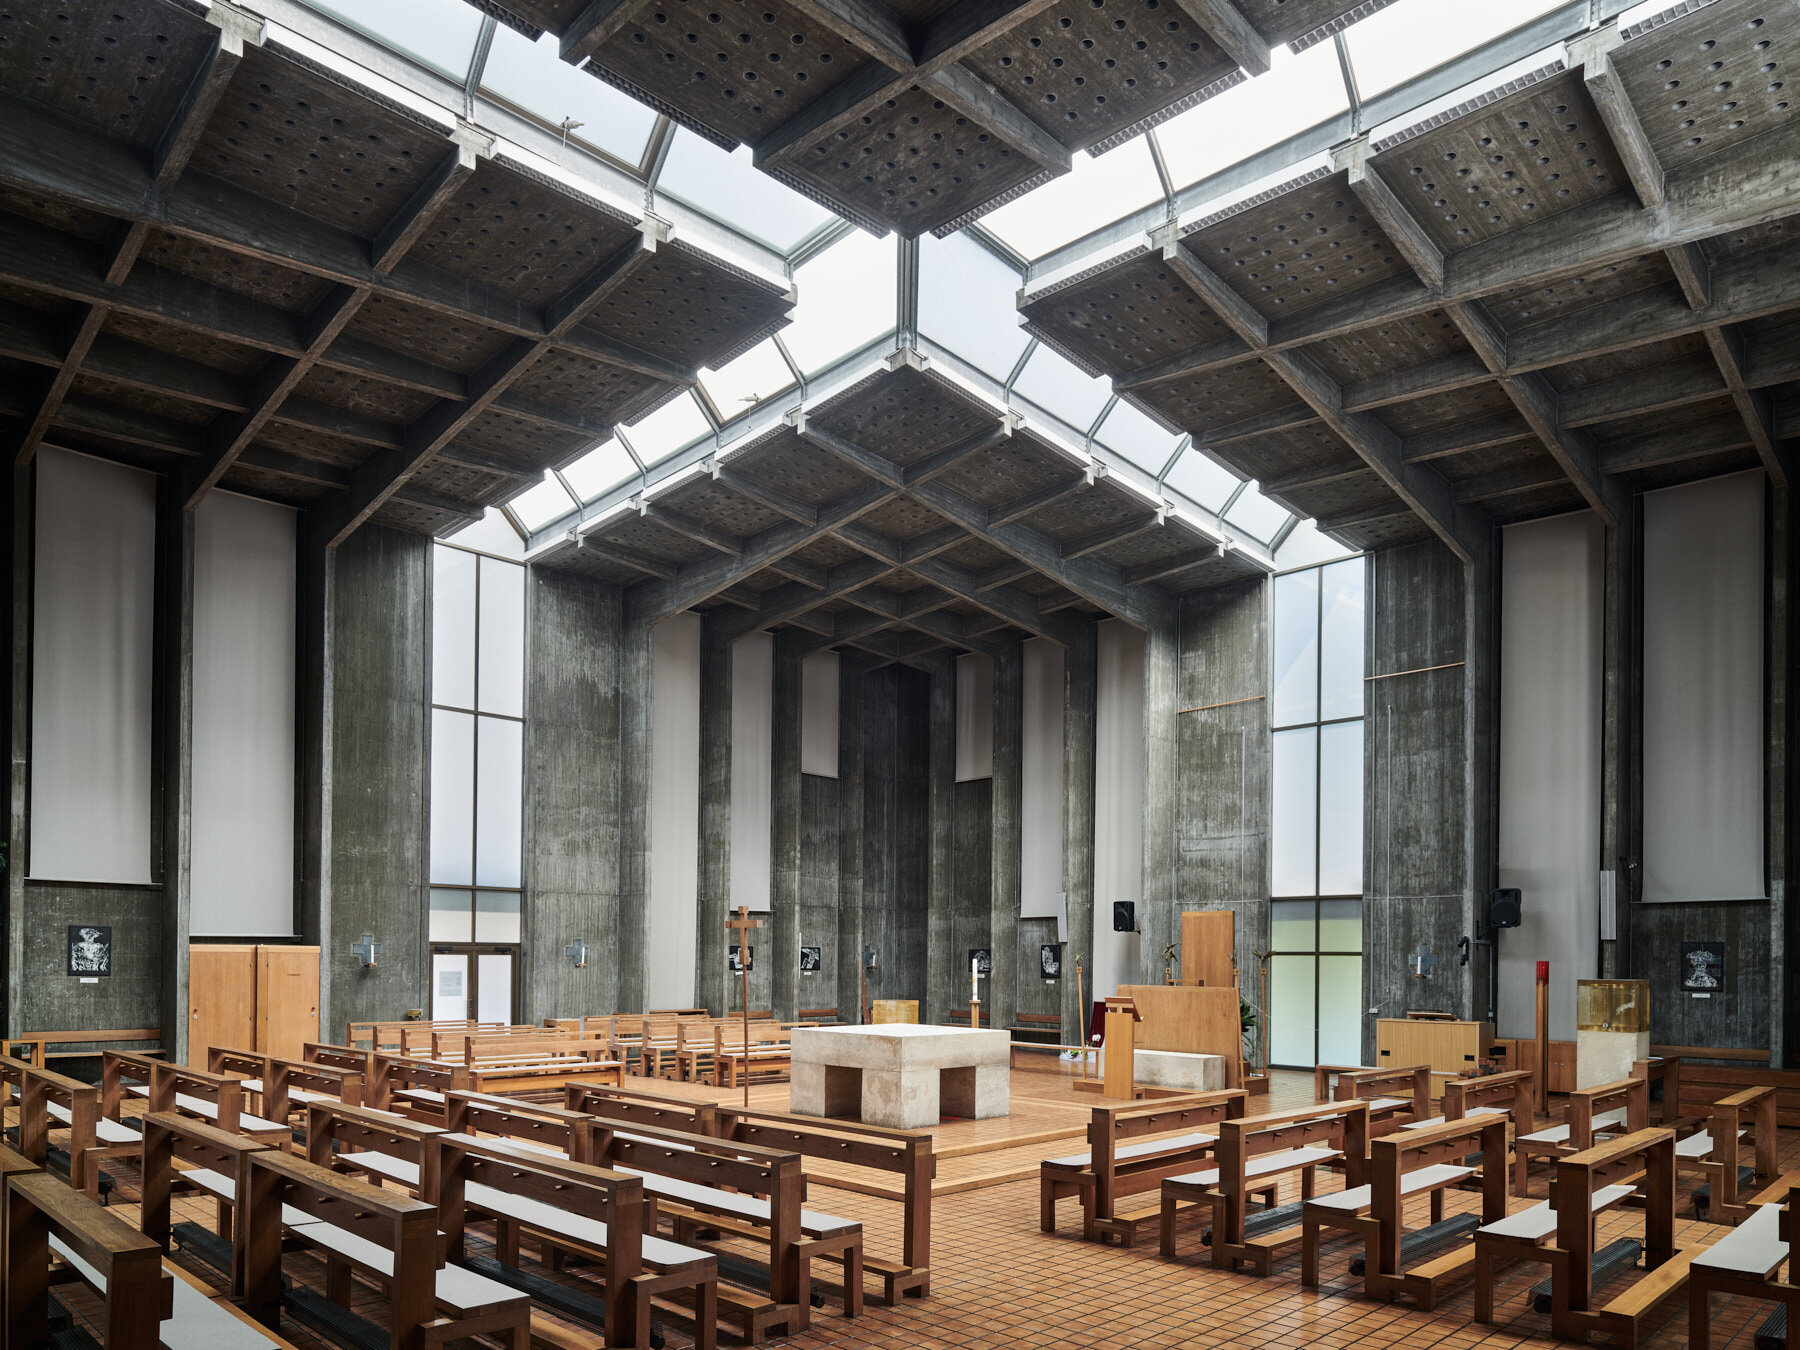 Kirche Zu den vier heiligen Evangelisten - Vienna, Austria - Johann Georg Gsteu, 1963-1965